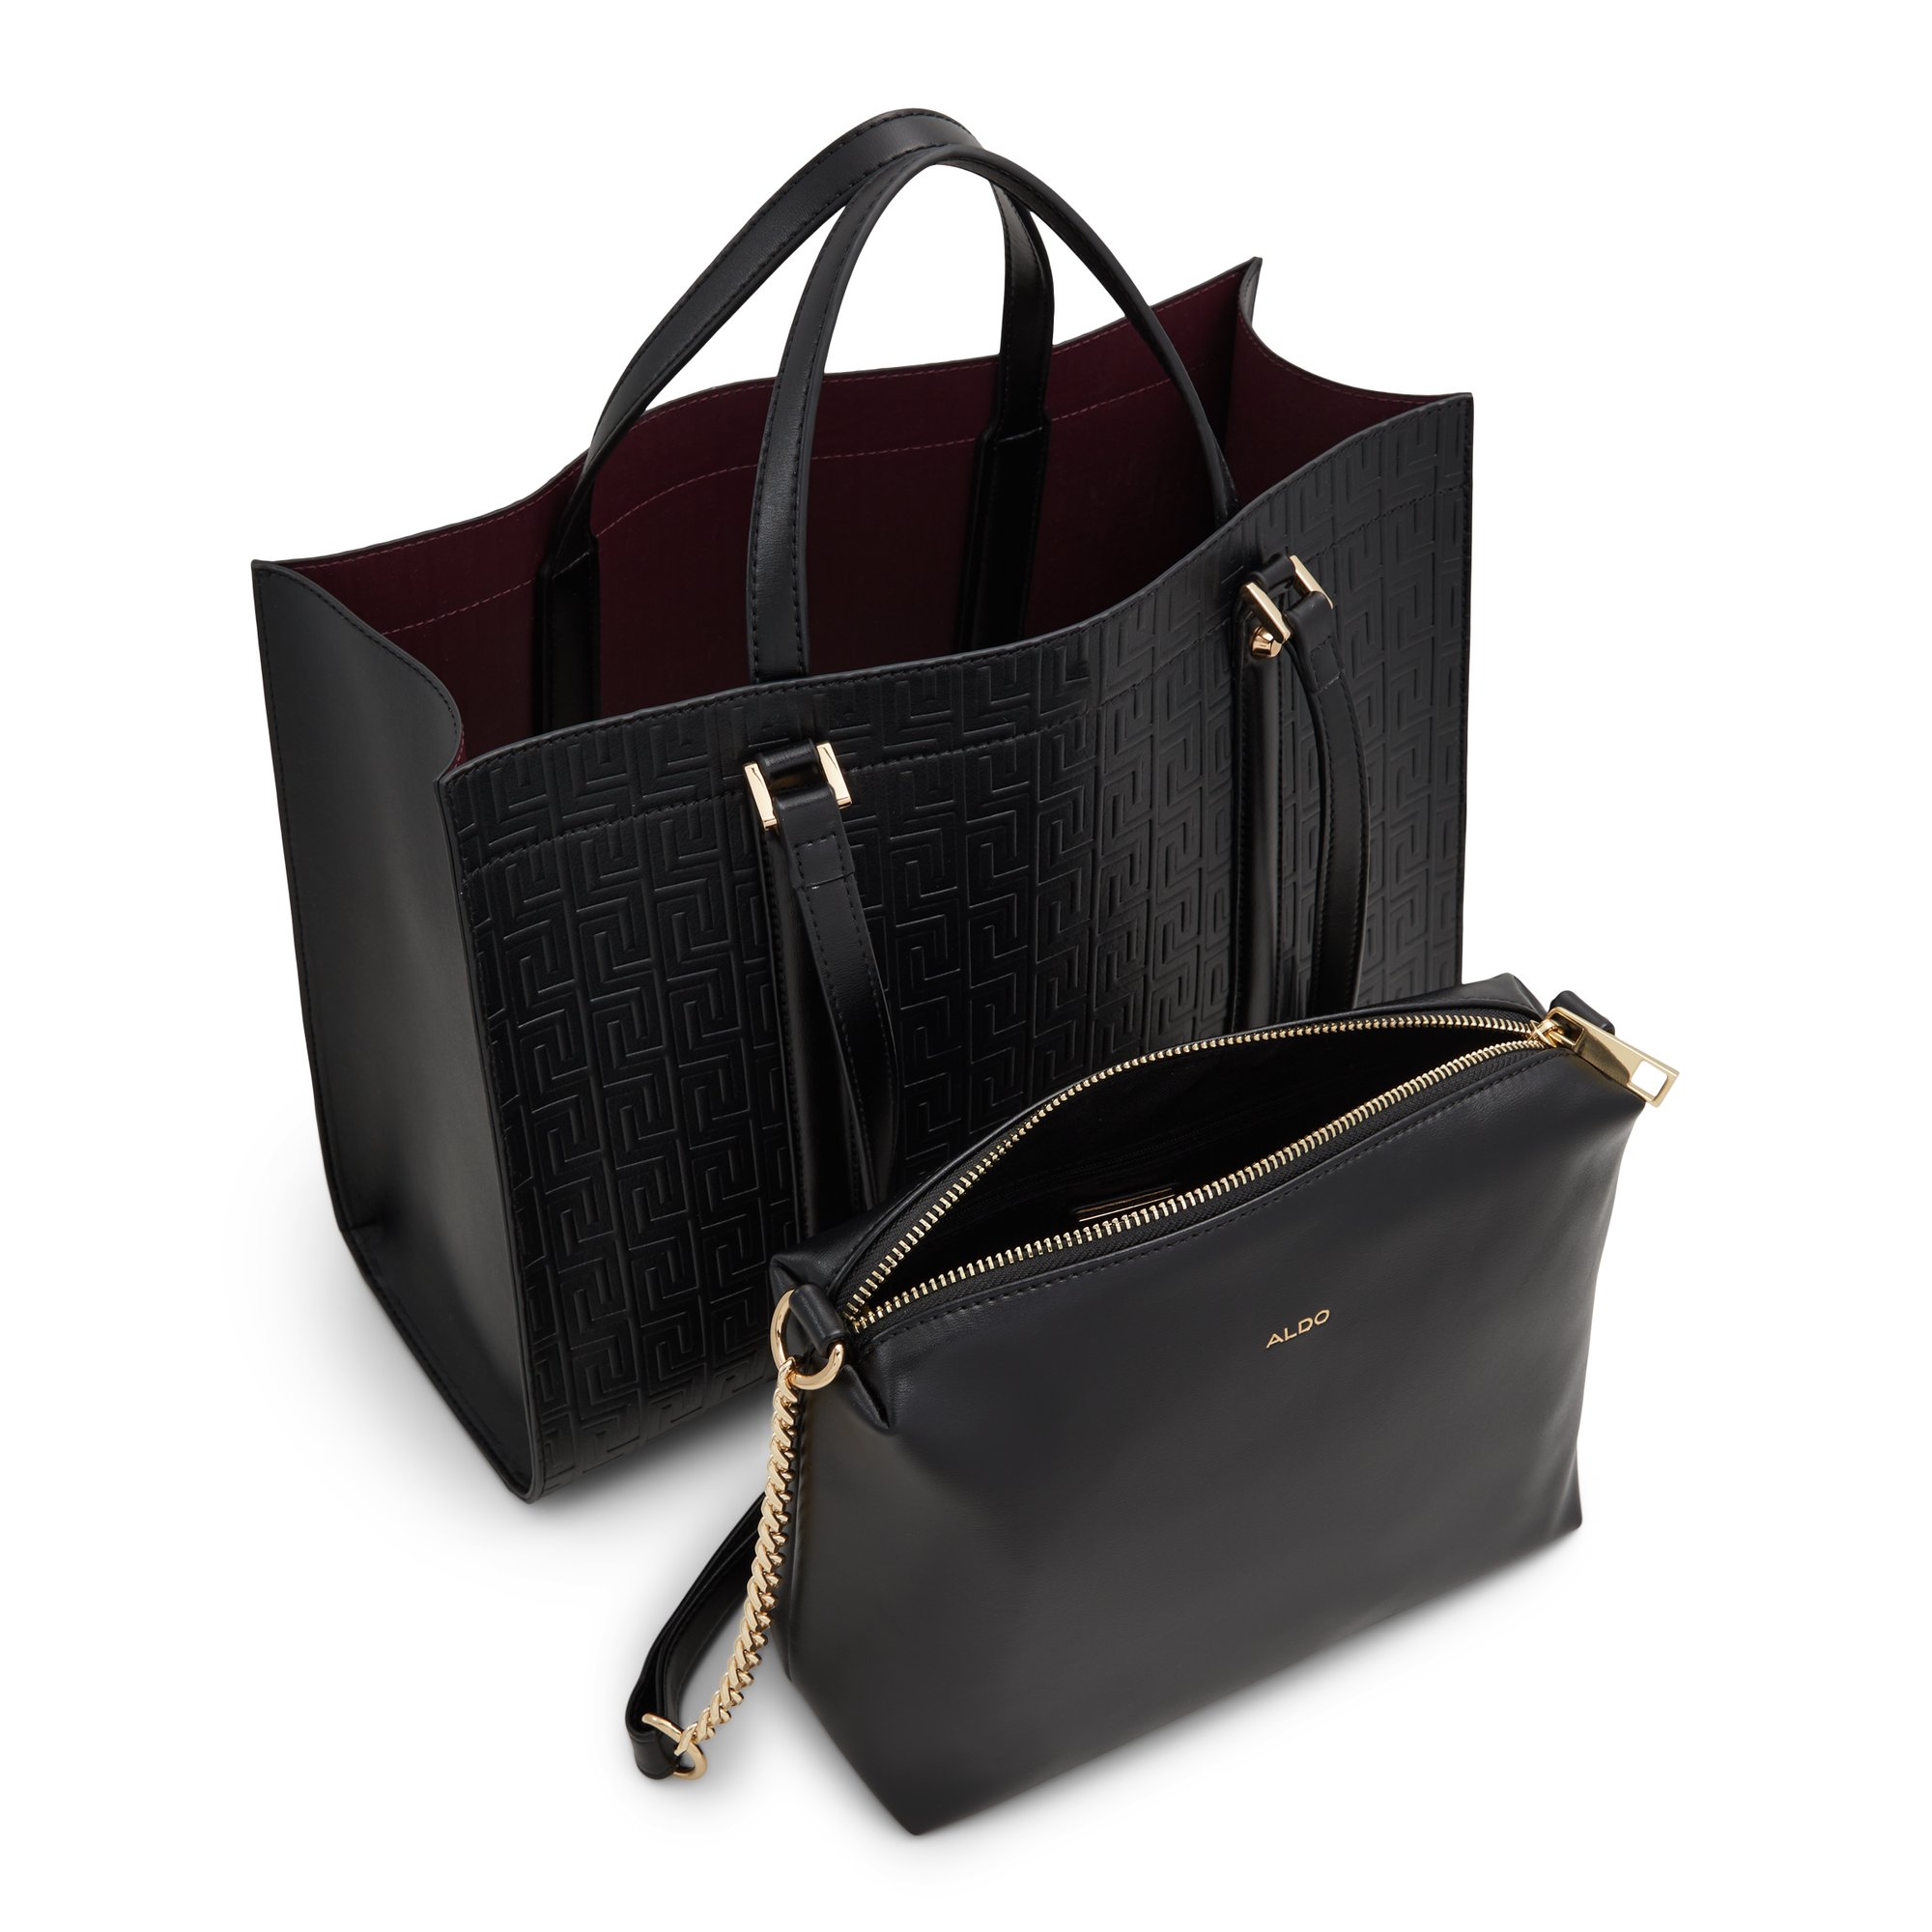 ALDO Ninetonineex - Women's Handbags Totes - Black